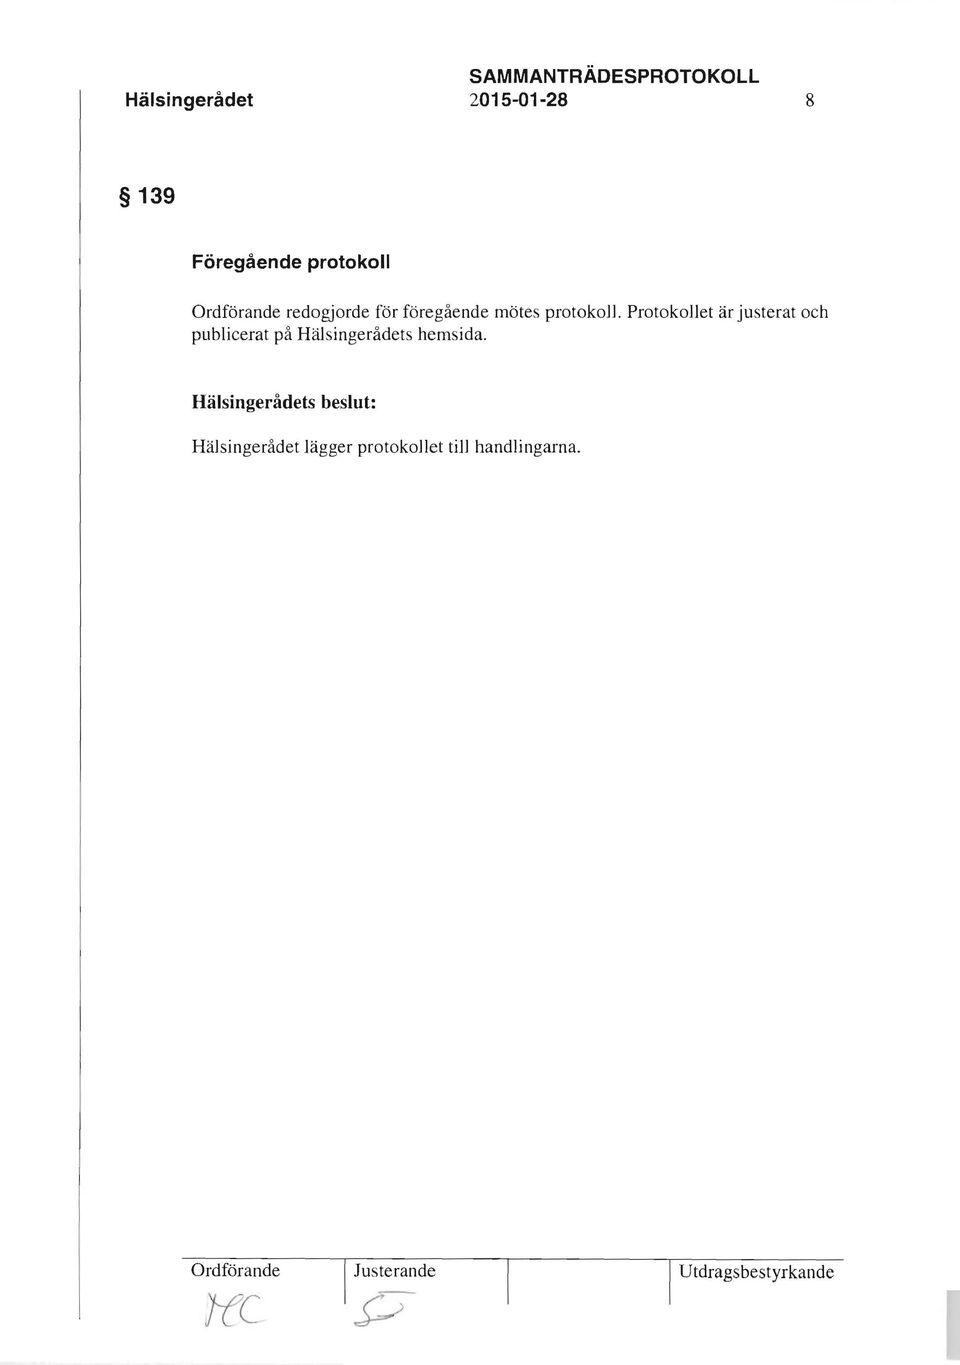 Protokollet är justerat och publicerat på Hälsingerådets hemsida.